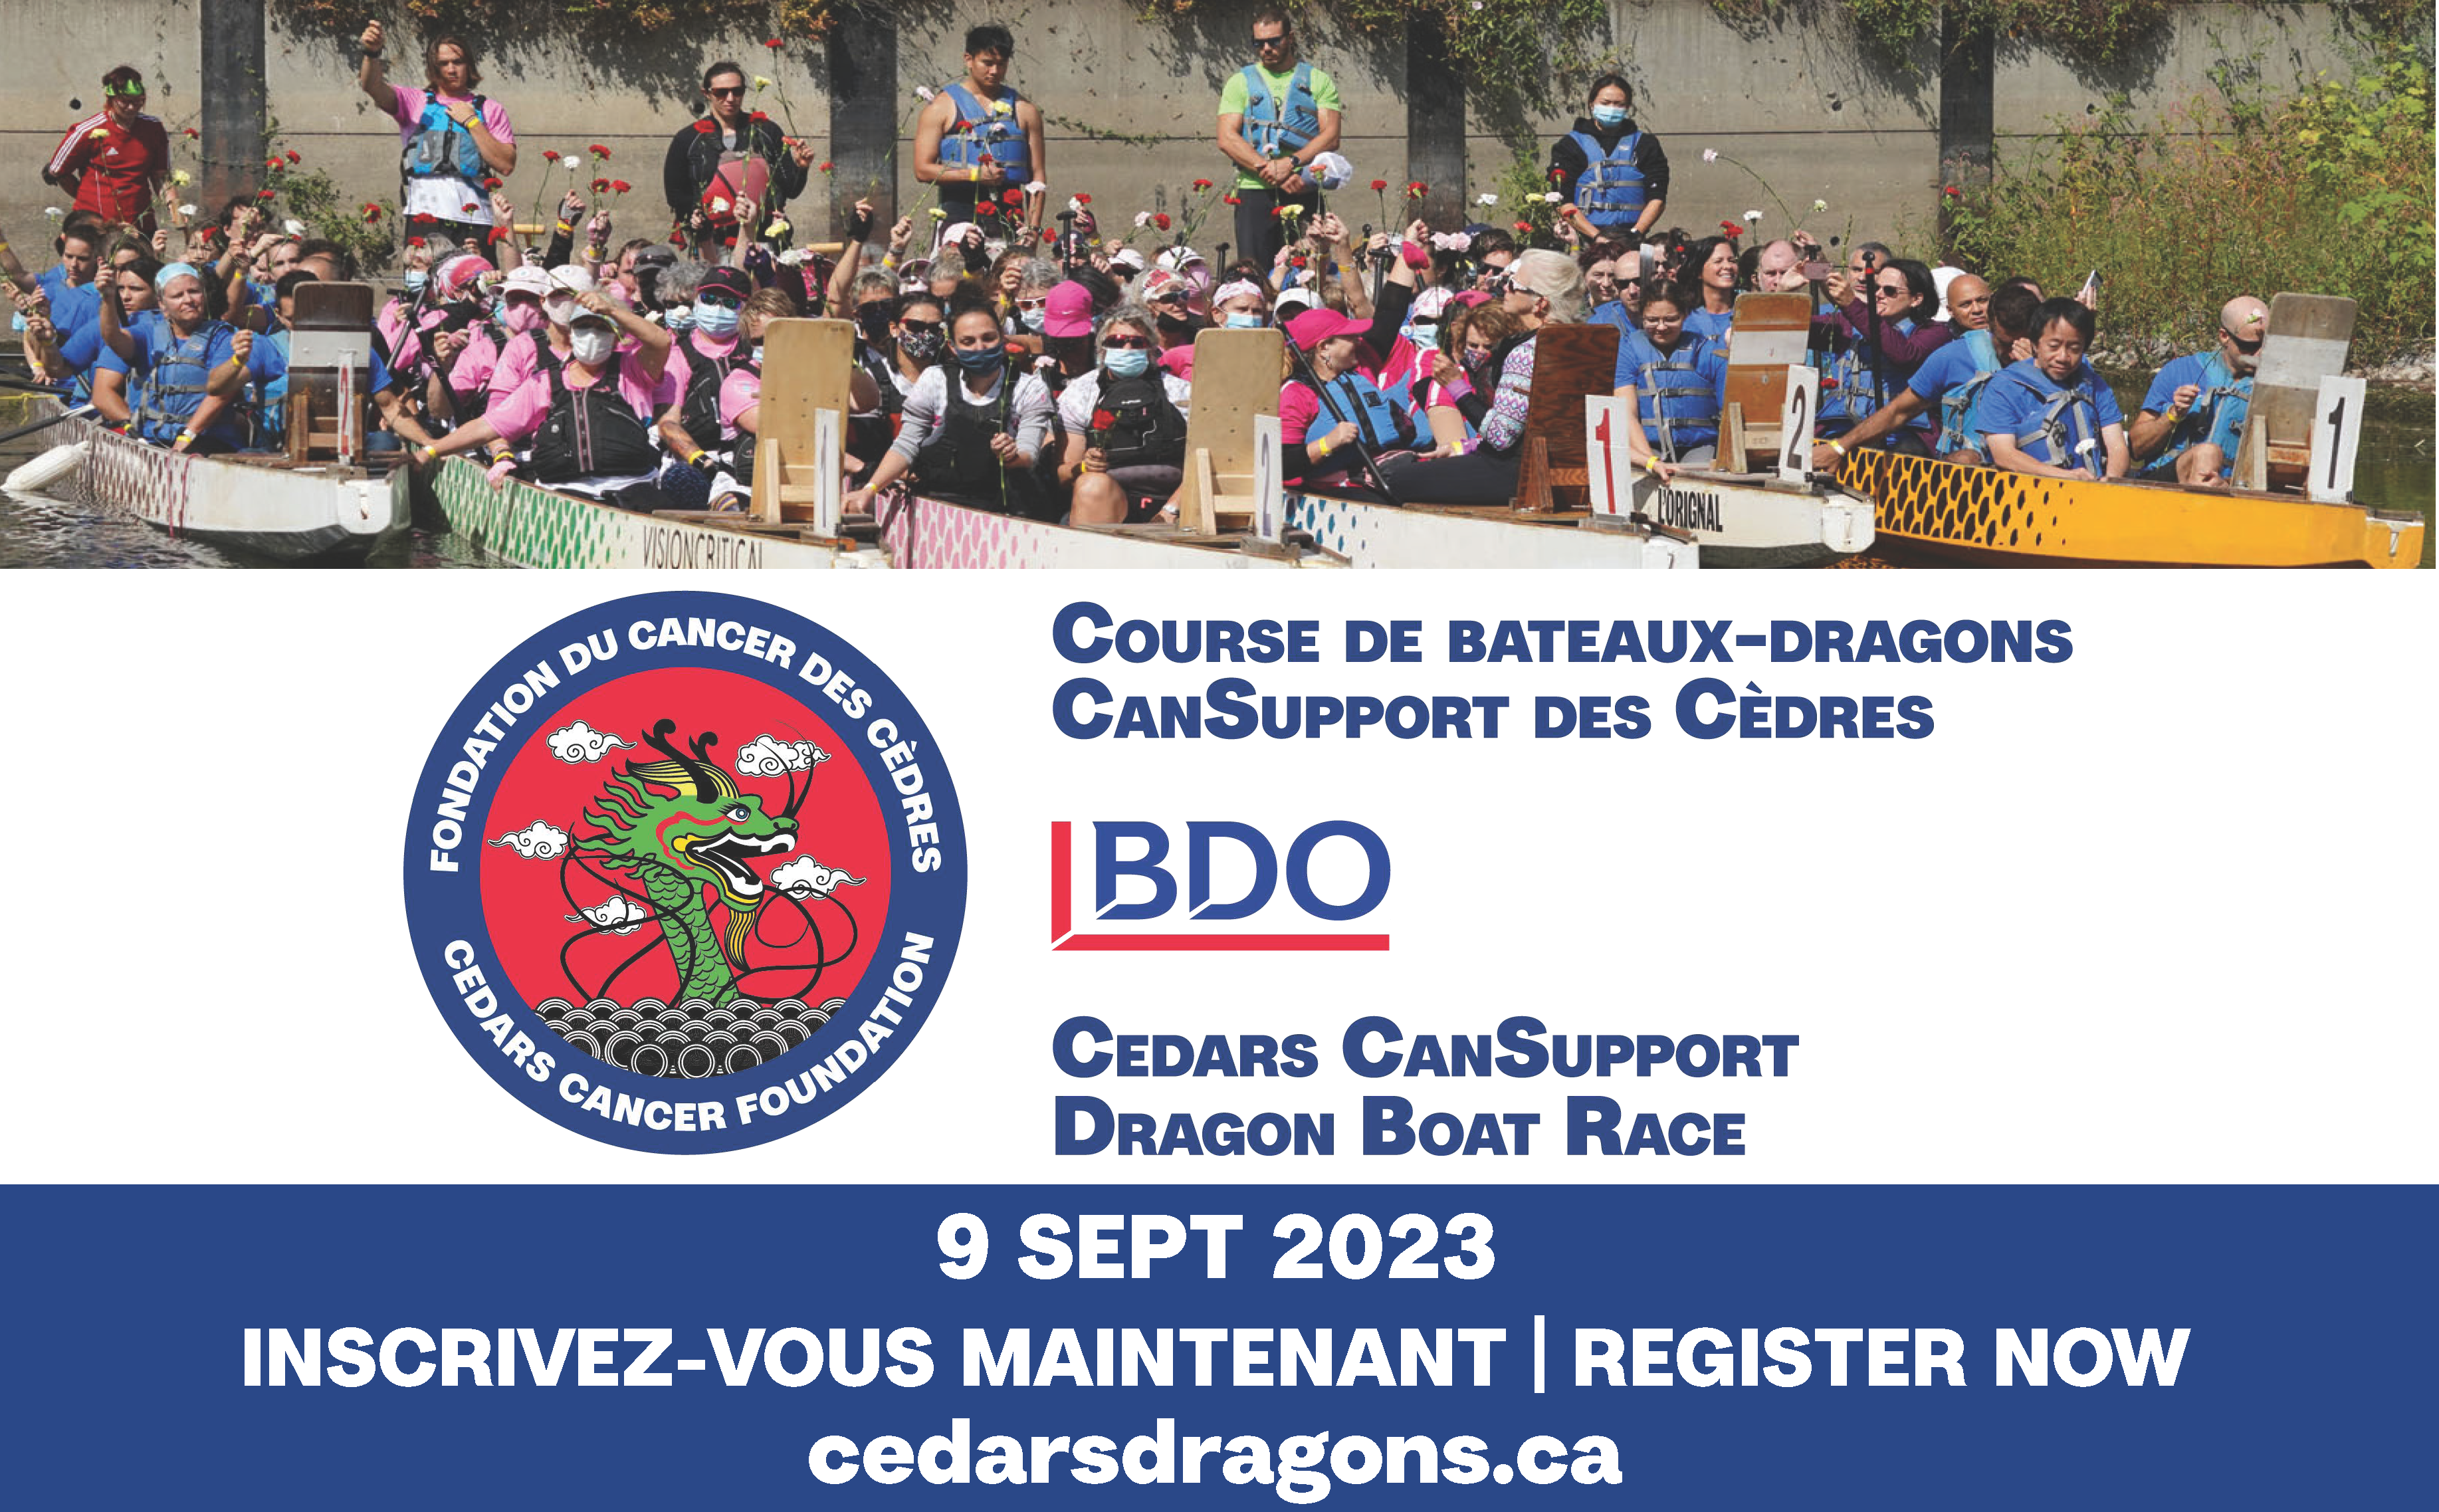 Course de bateaux-dragons CanSupport des Cèdres